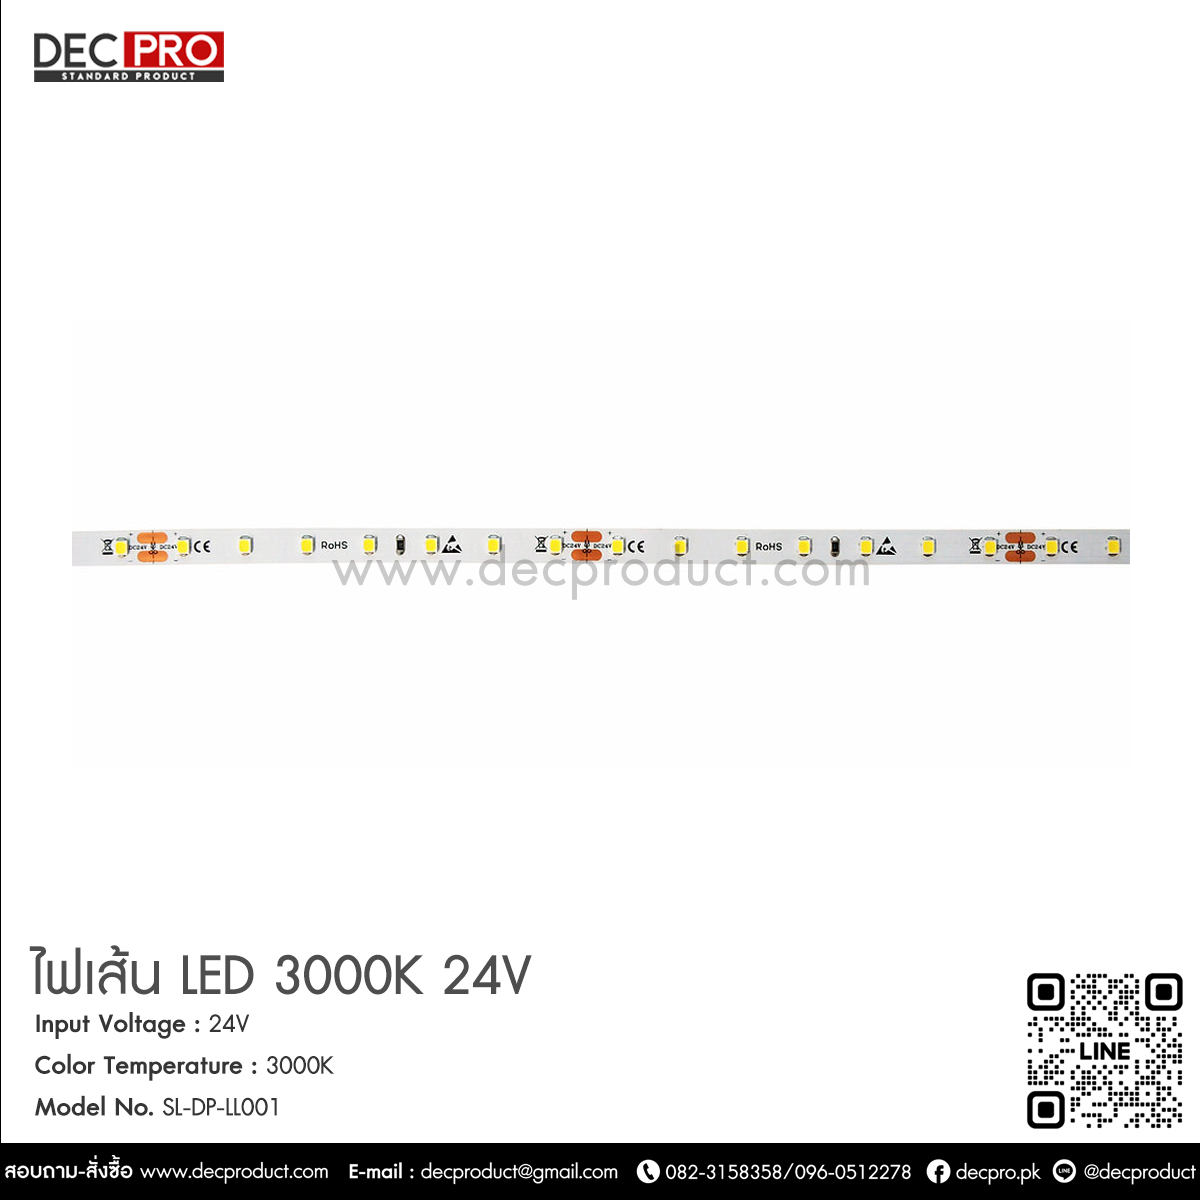 ไฟเส้น LED 4000K -24V แสงสีขาวนวล